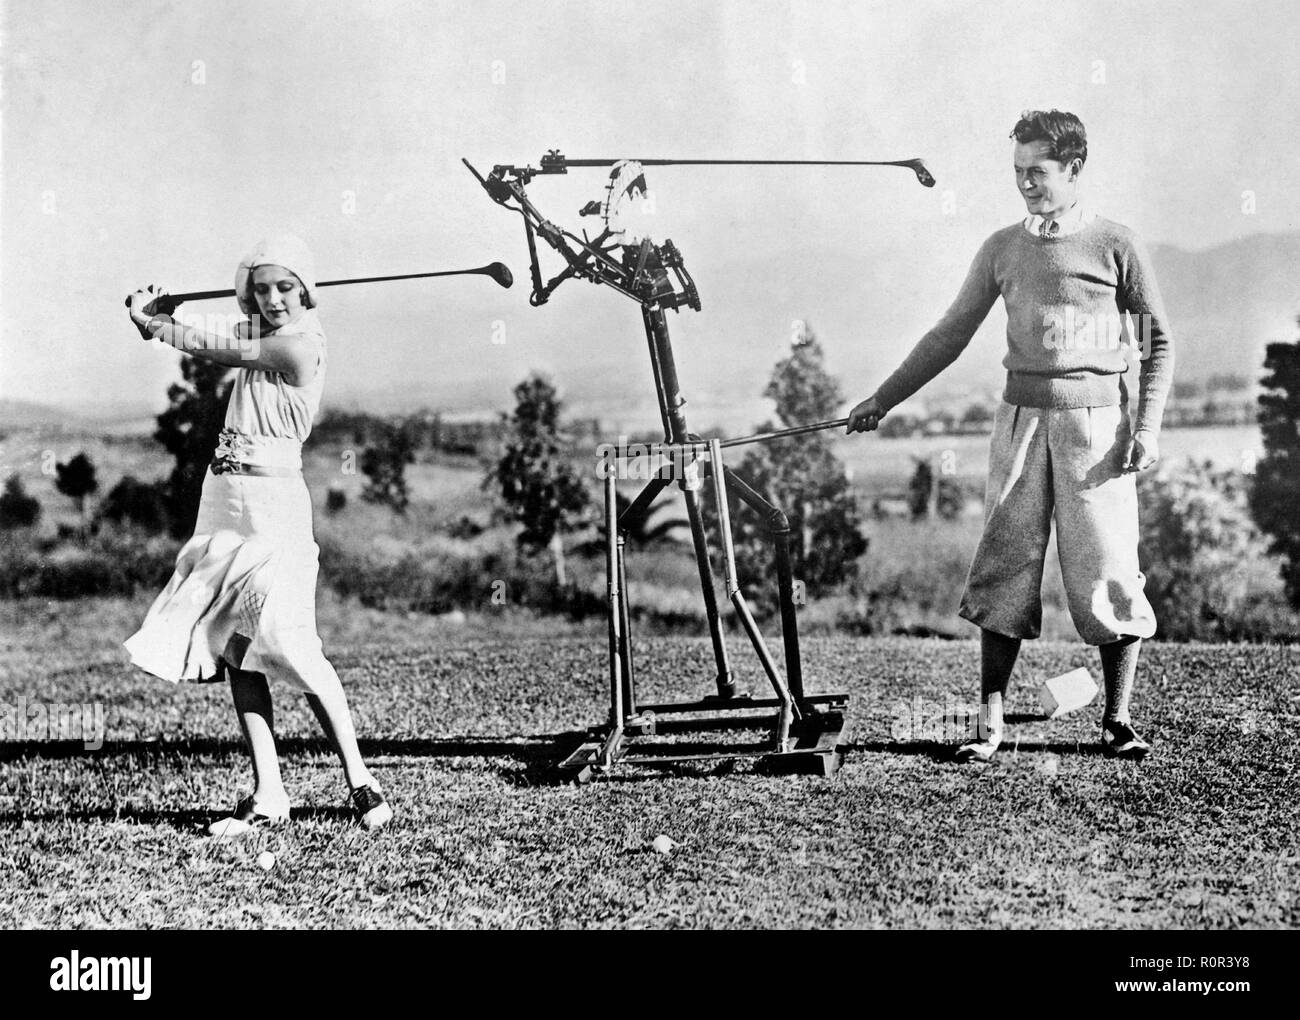 Femme d'apprendre à jouer au golf dans les années 1930. Une jeune femme obtient l'aide d'un instructeur de golf de robot afin de perfectionner son swing. Banque D'Images